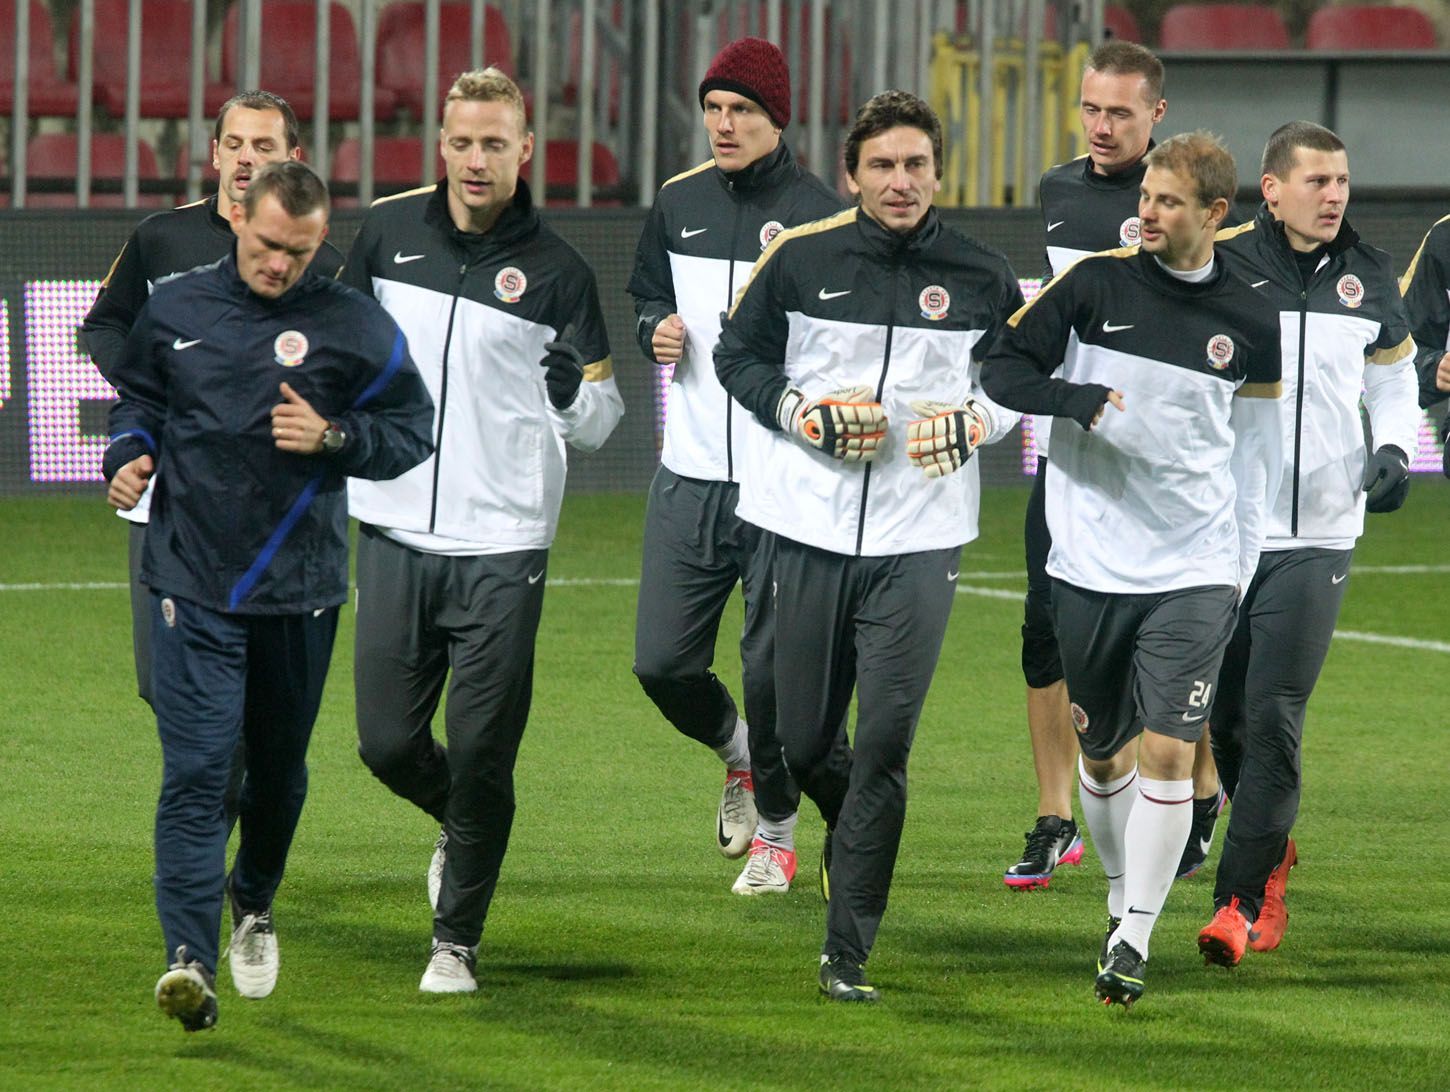 Sparťanští fotbalisté na tréninku před utkáním Evropské ligy 2012/13 s Lyonem.